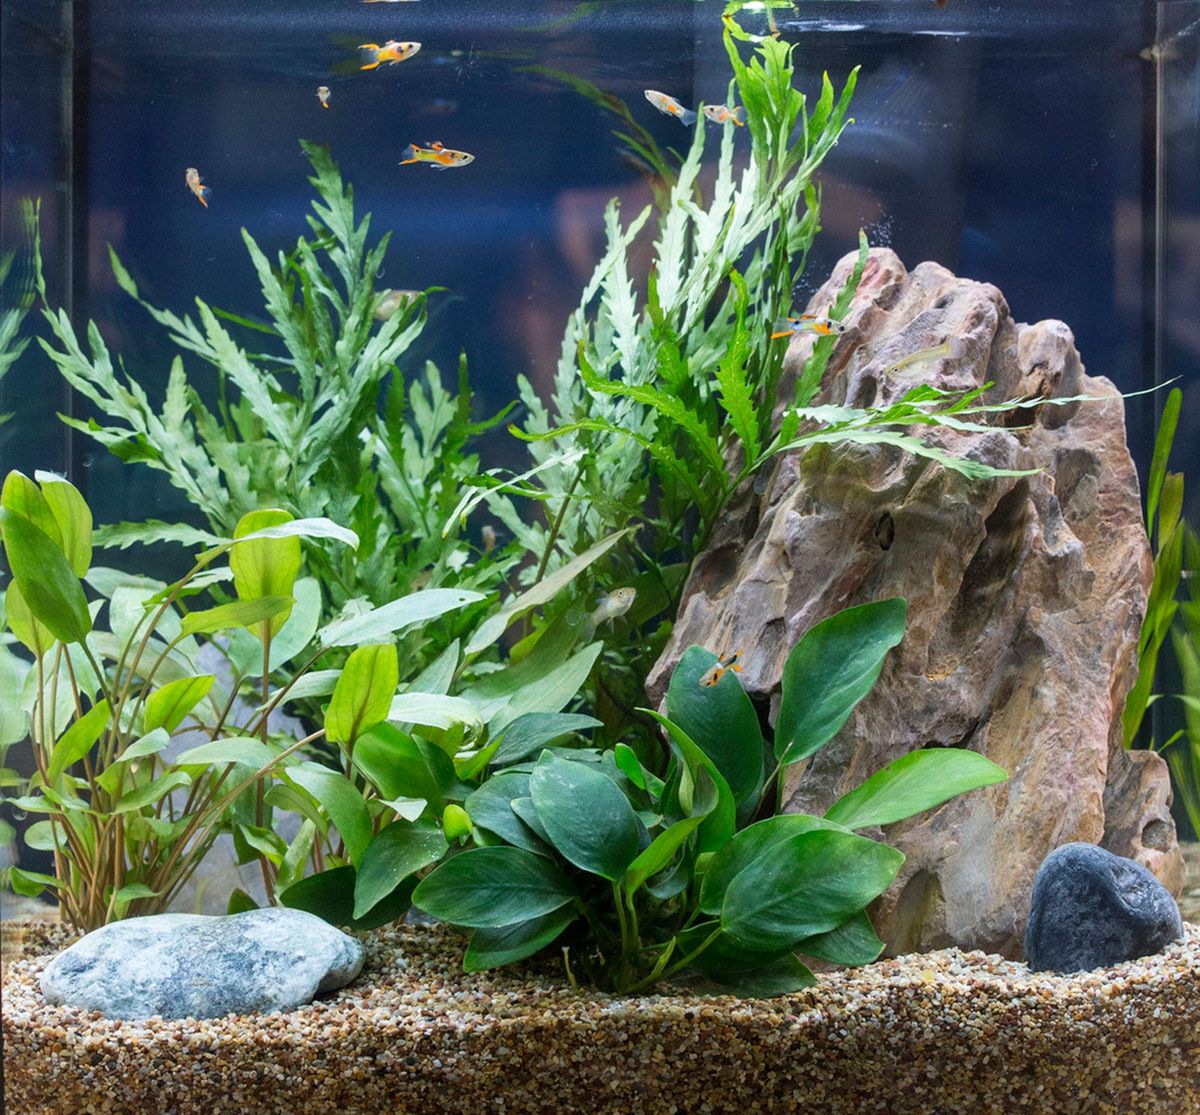 Live Aquarium Plants Live Fish Tank Water Plants Artificial Decor Plants  Grass